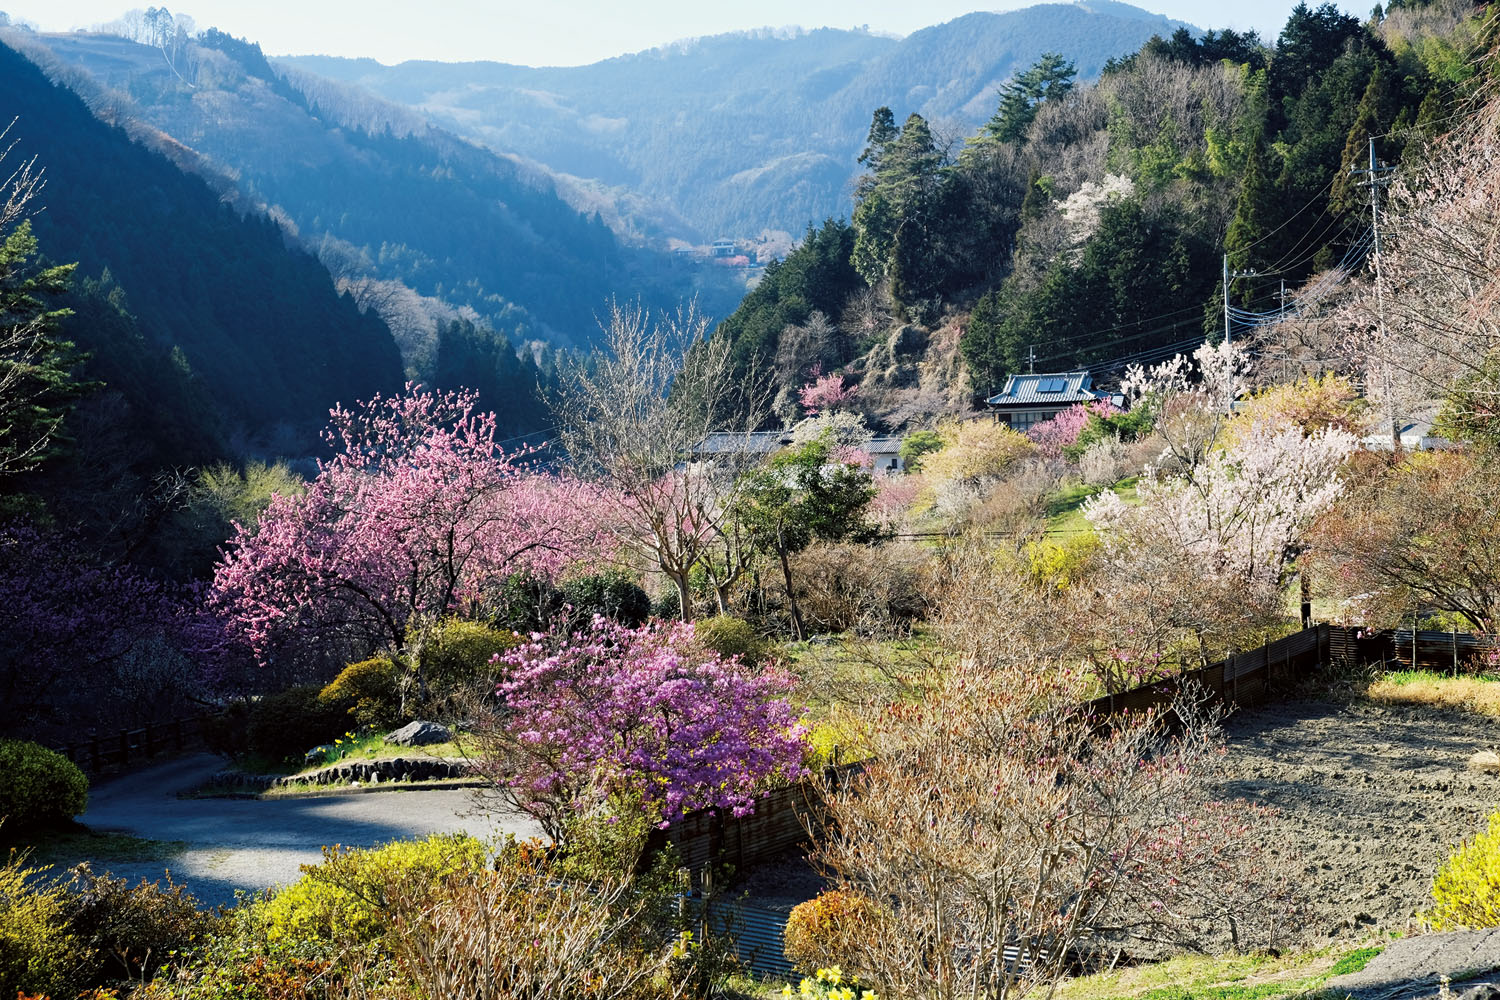 麓の白石の集落。取材は4月上旬だったので、梅などが一斉に咲いていた。まるで桃源郷。